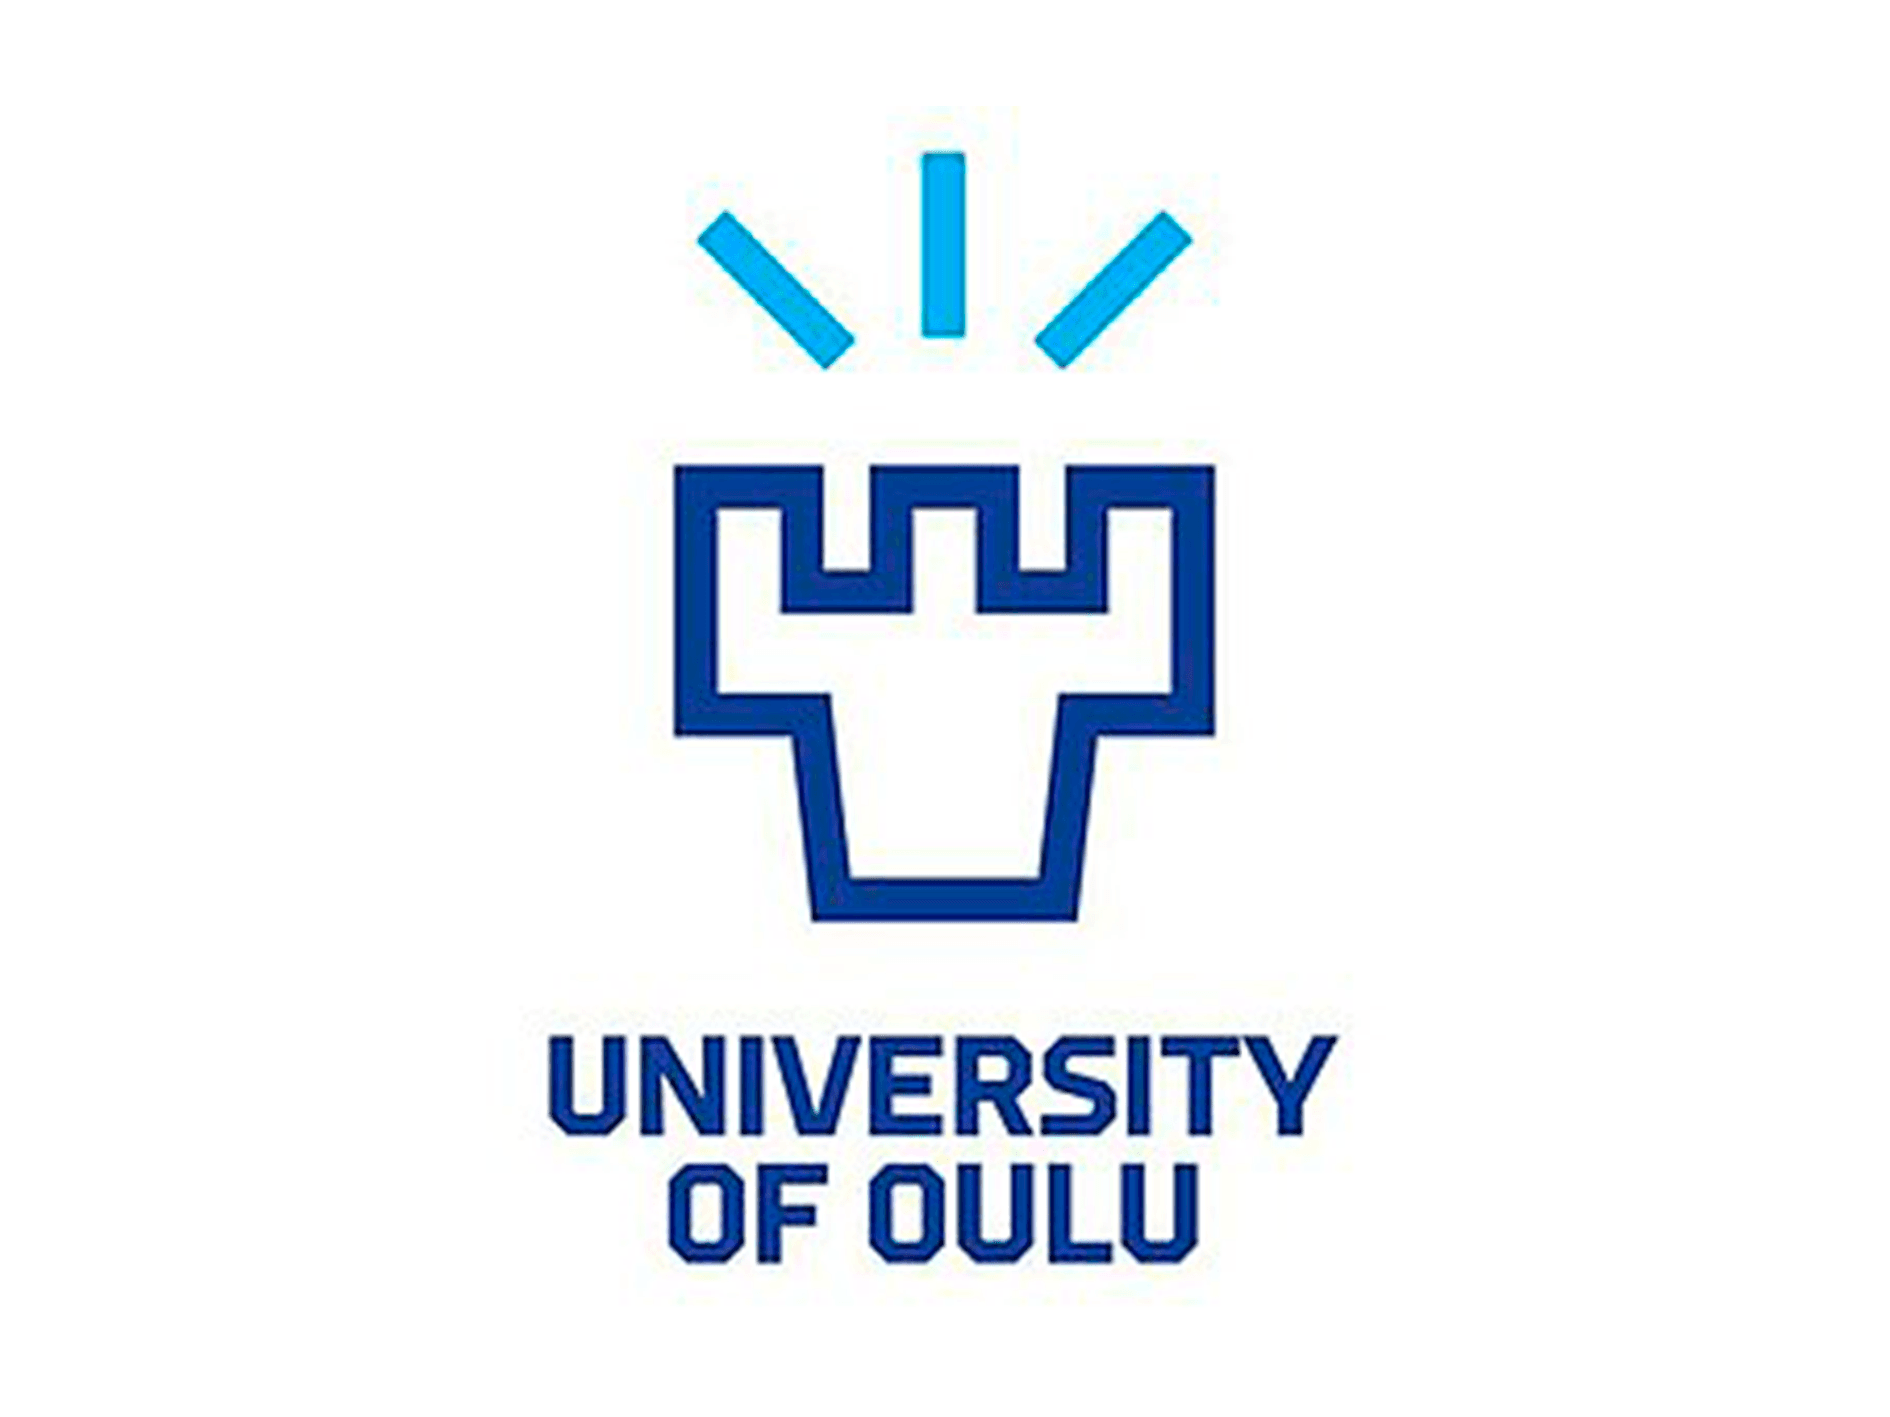 University of Oulu Finlàndia